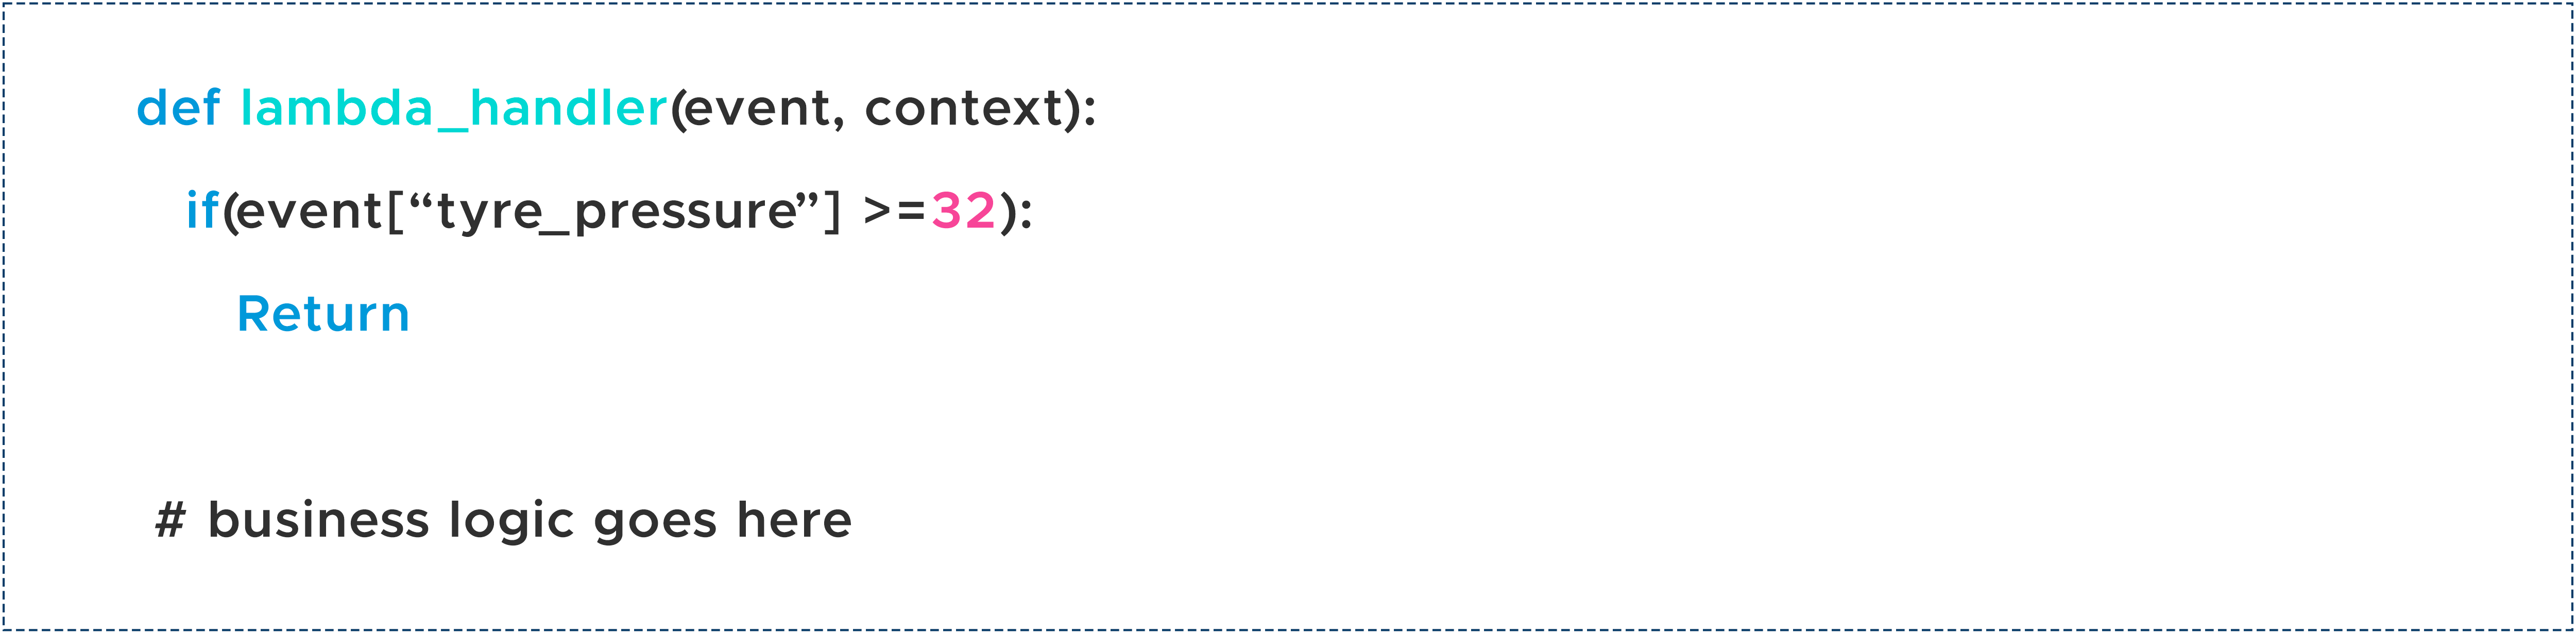 code example 2